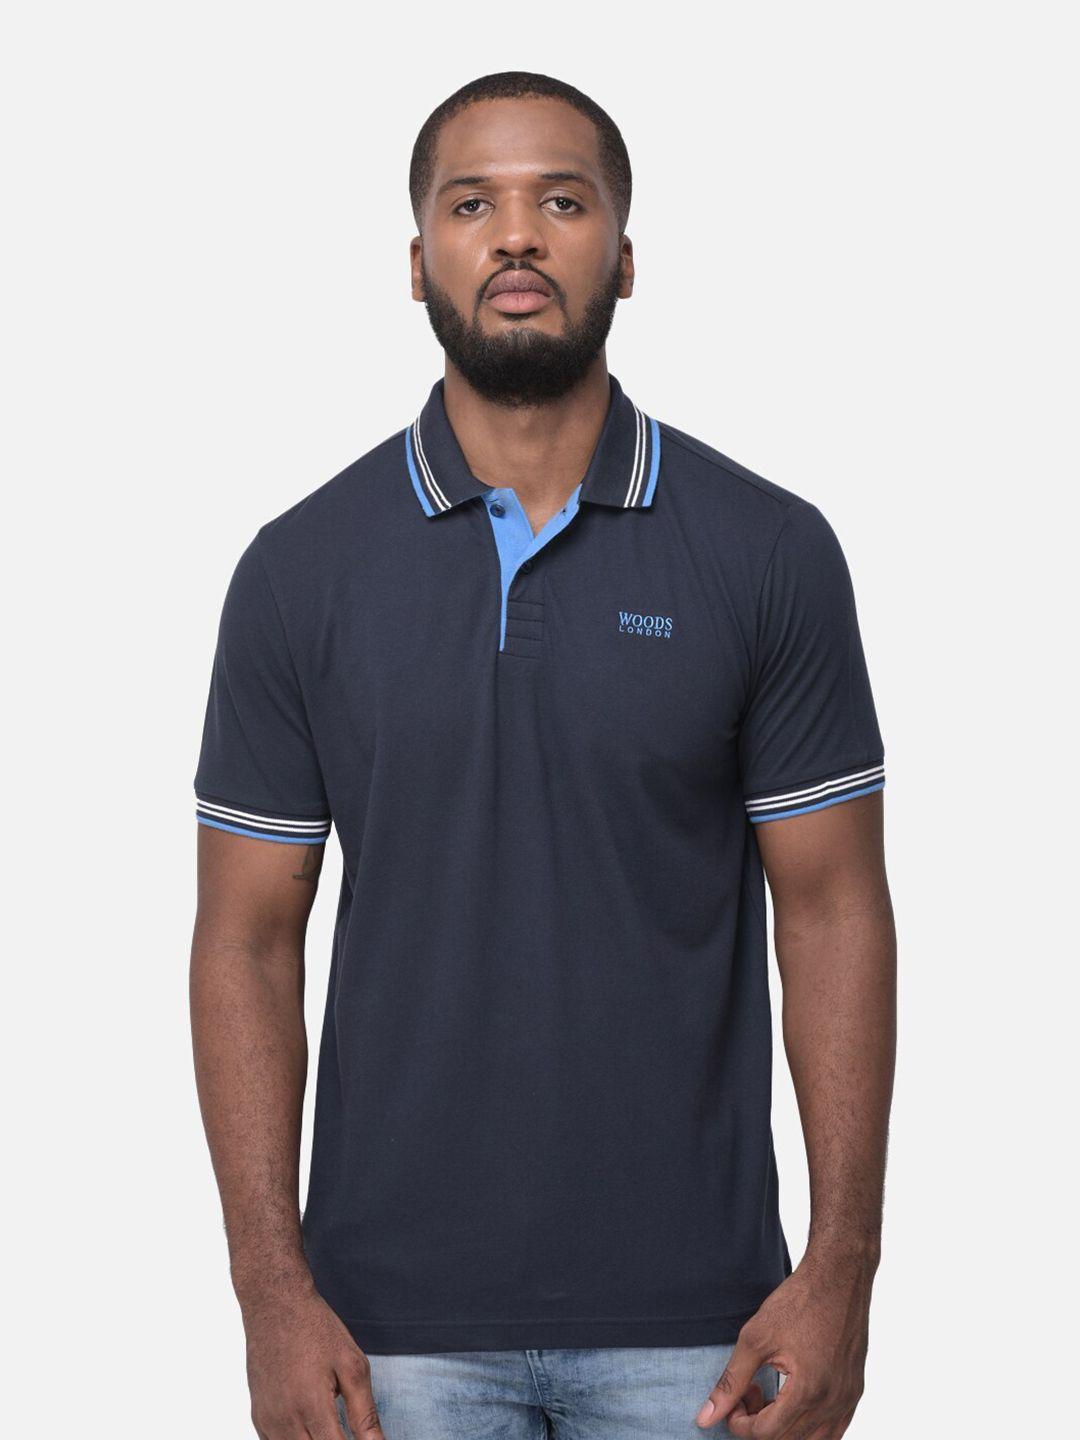 woods-men-navy-blue-polo-collar-t-shirt